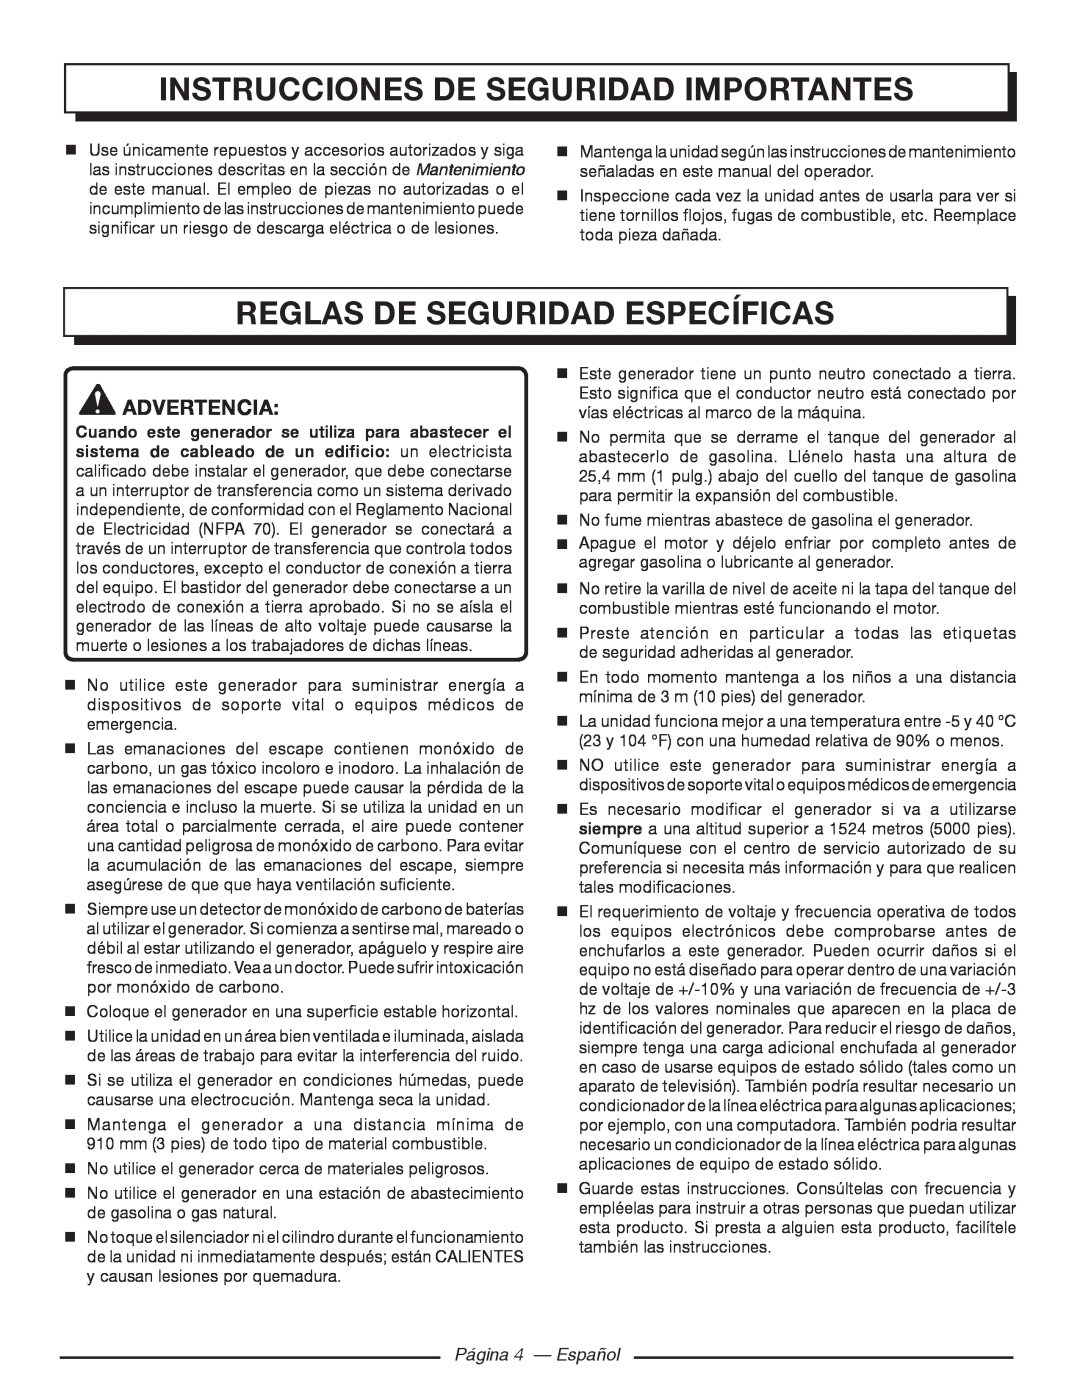 Homelite HGCA5000 Reglas De Seguridad Específicas, Página 4 - Español, Instrucciones De Seguridad Importantes, Advertencia 